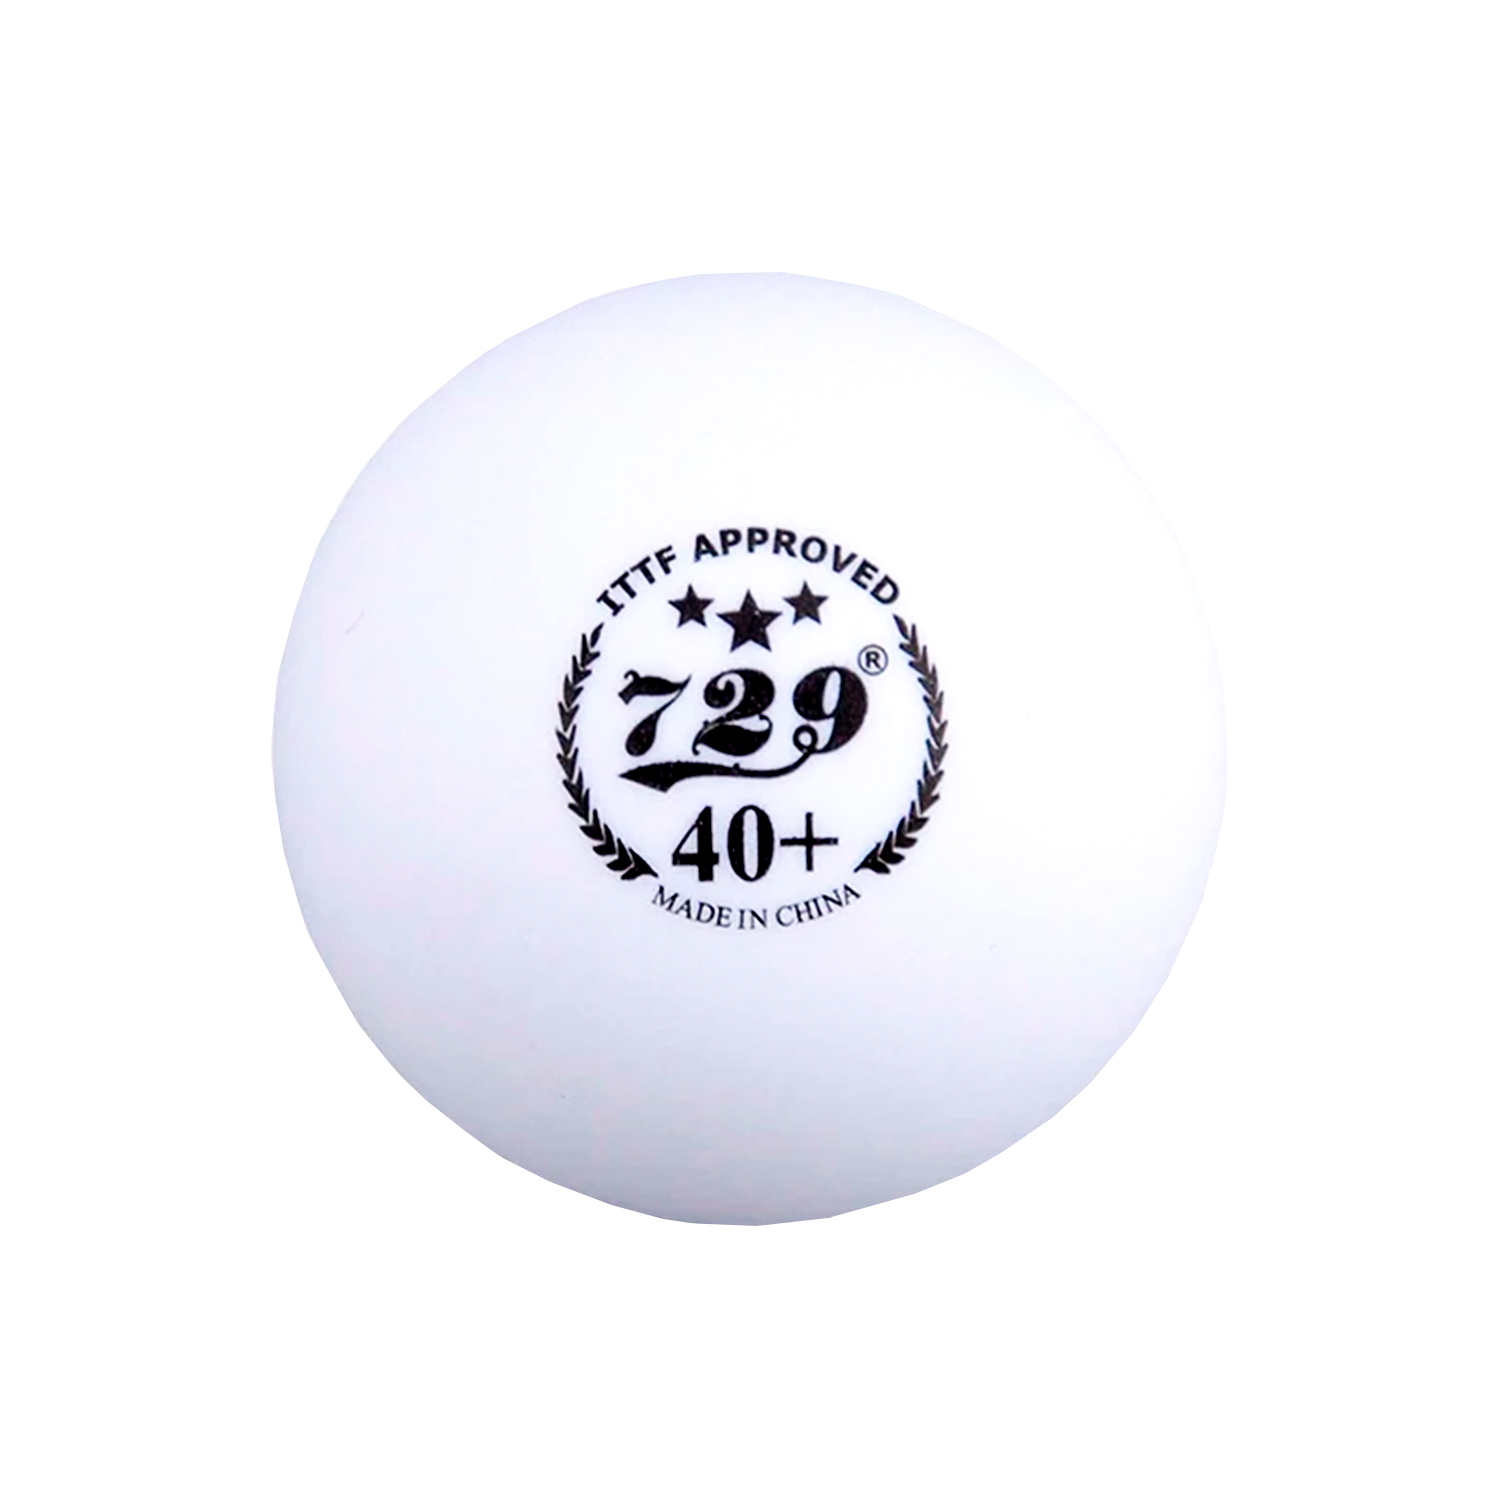 Мячи для настольного тенниса 729 40+, 6 шт